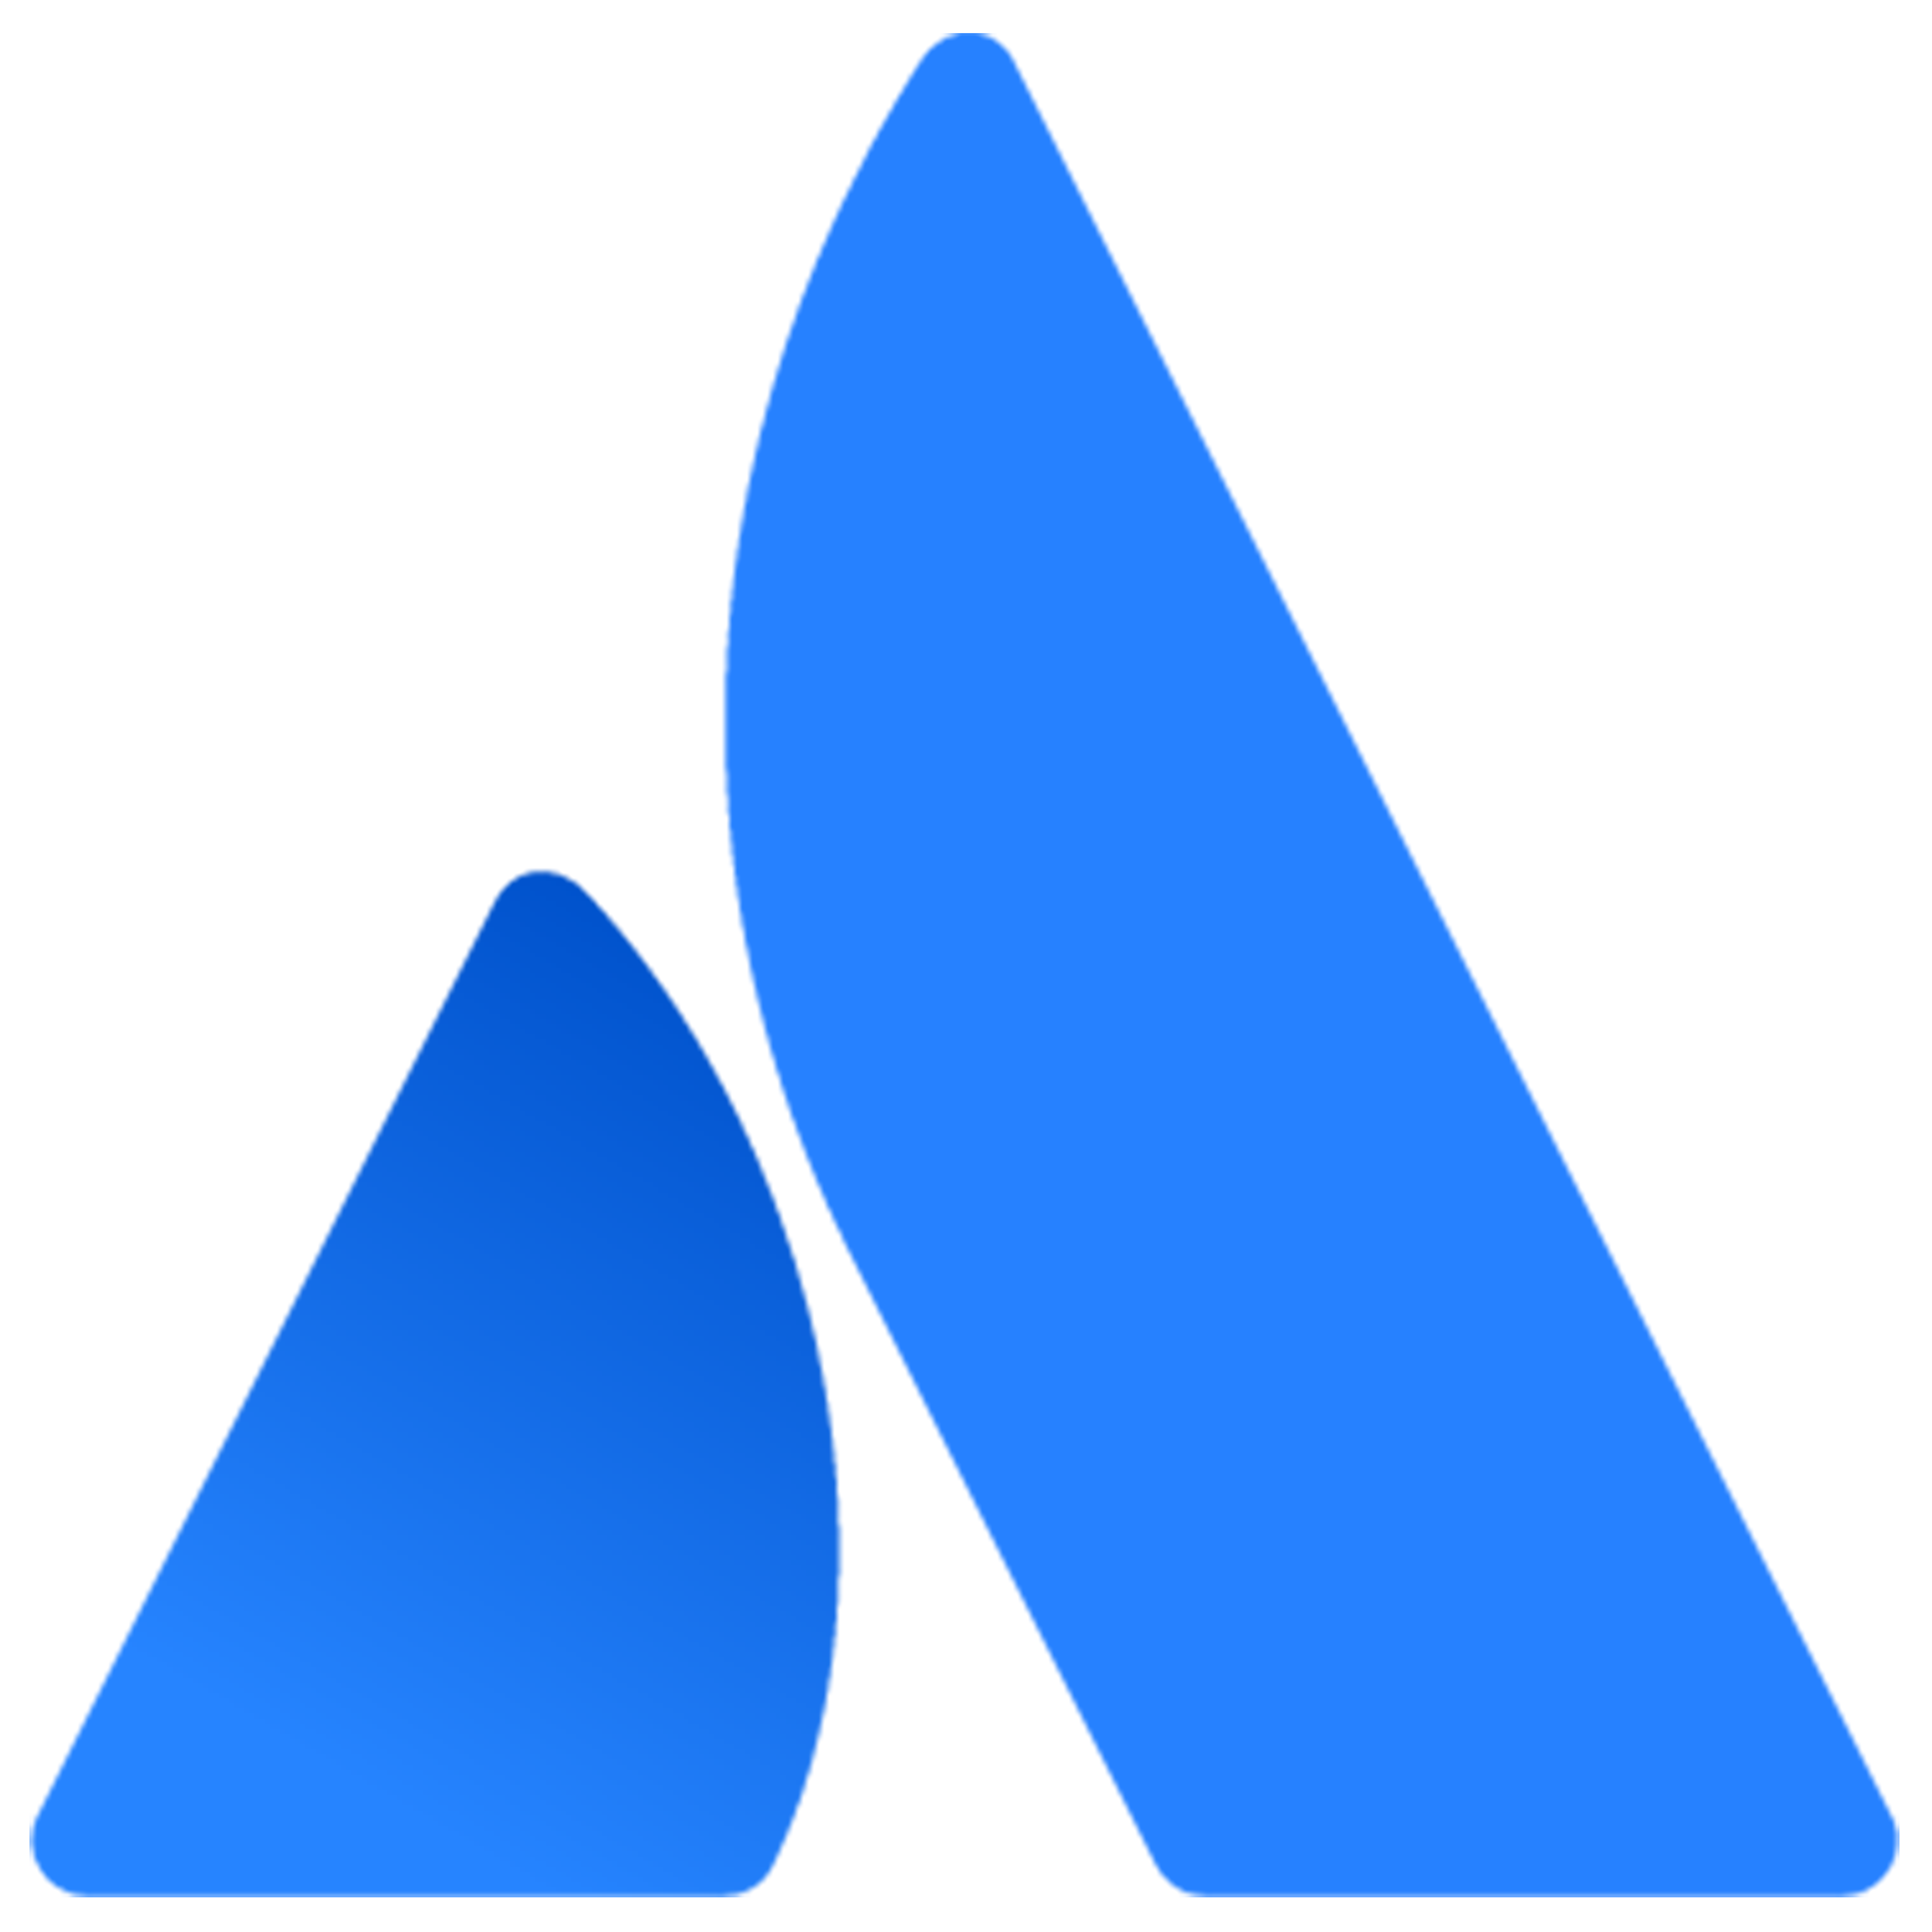 The icon representing Atlassian Suite